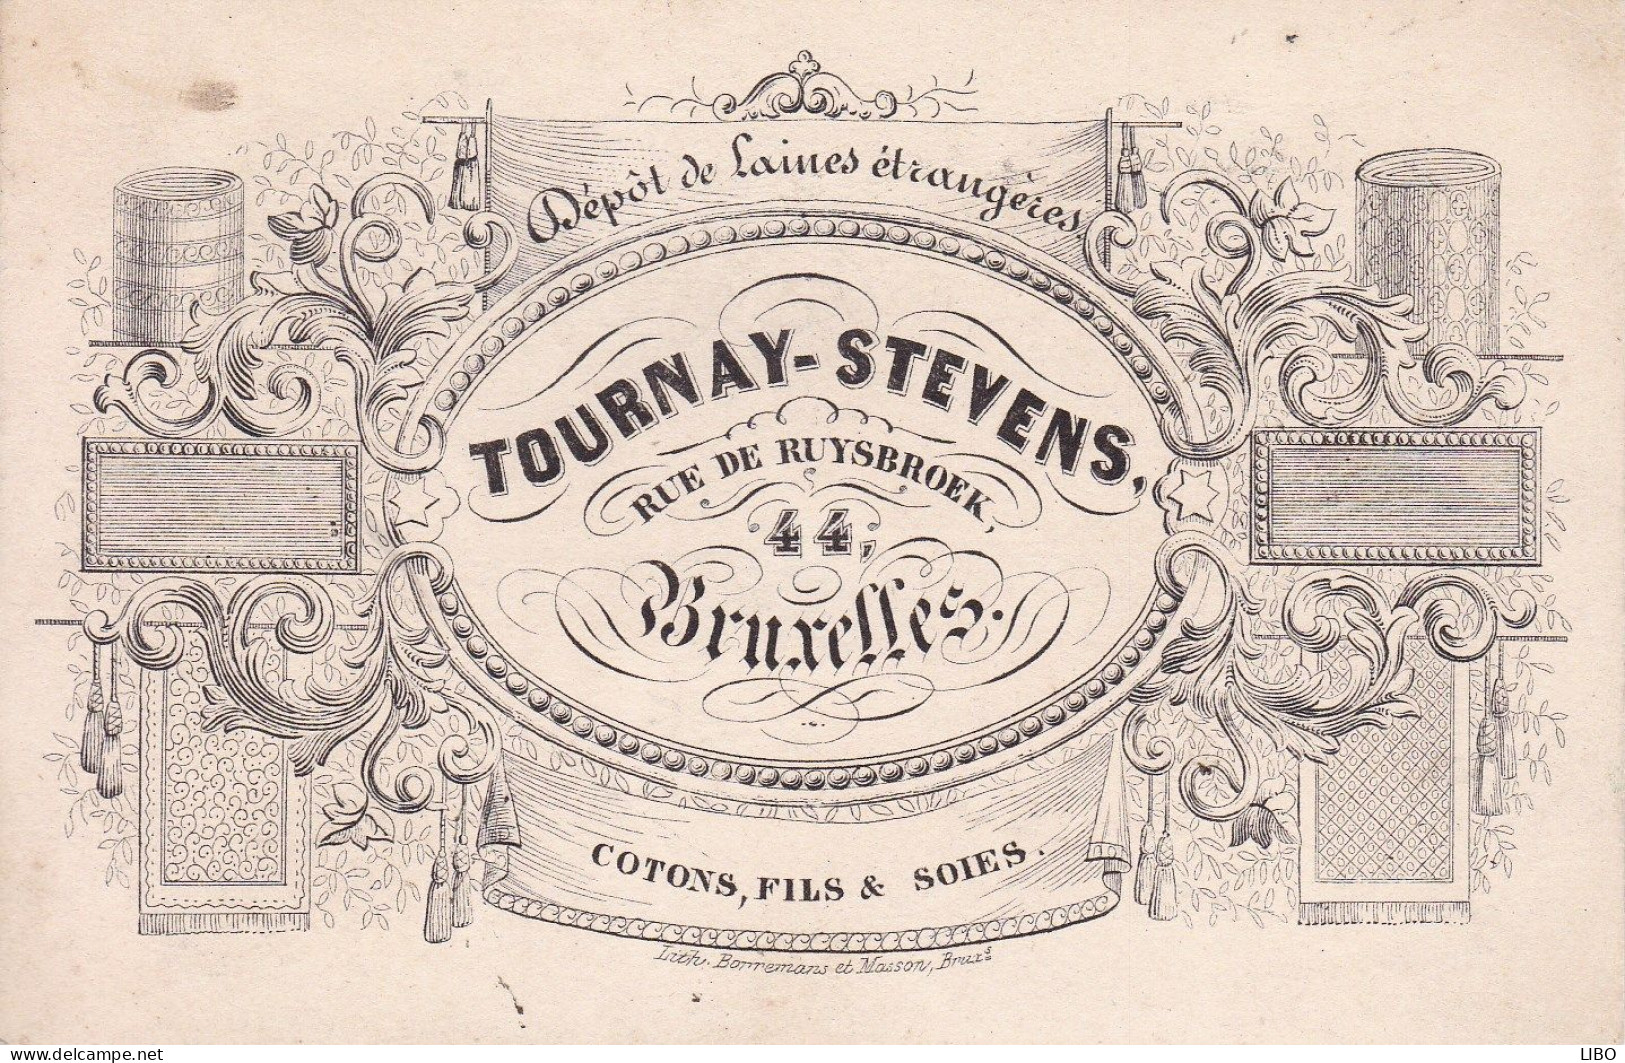 BRUXELLES Laines TOURNAY-STEVENS Rue De Ruysbroek Cotons Fils Et Soies Carte De Visite Format Carte Postale C. 1860 - Cartoncini Da Visita